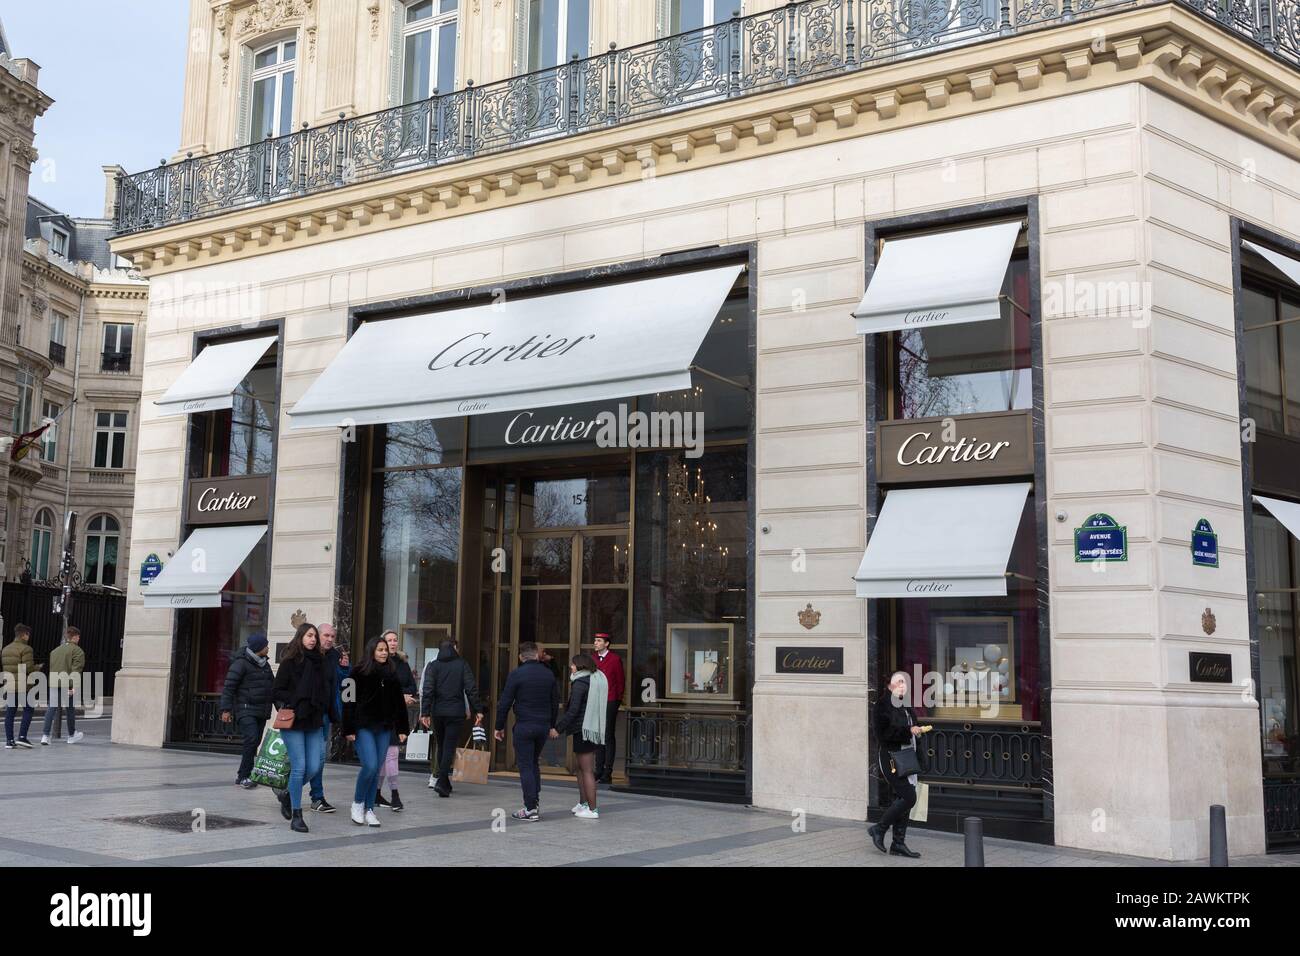 Seitenansicht auf dem Cartier-Laden an den Champs-Elysées. Menschen (Käufer?) mit Taschen laufen vorbei. Die Marke "Cartier" gehört zur Richemont Group. Stockfoto